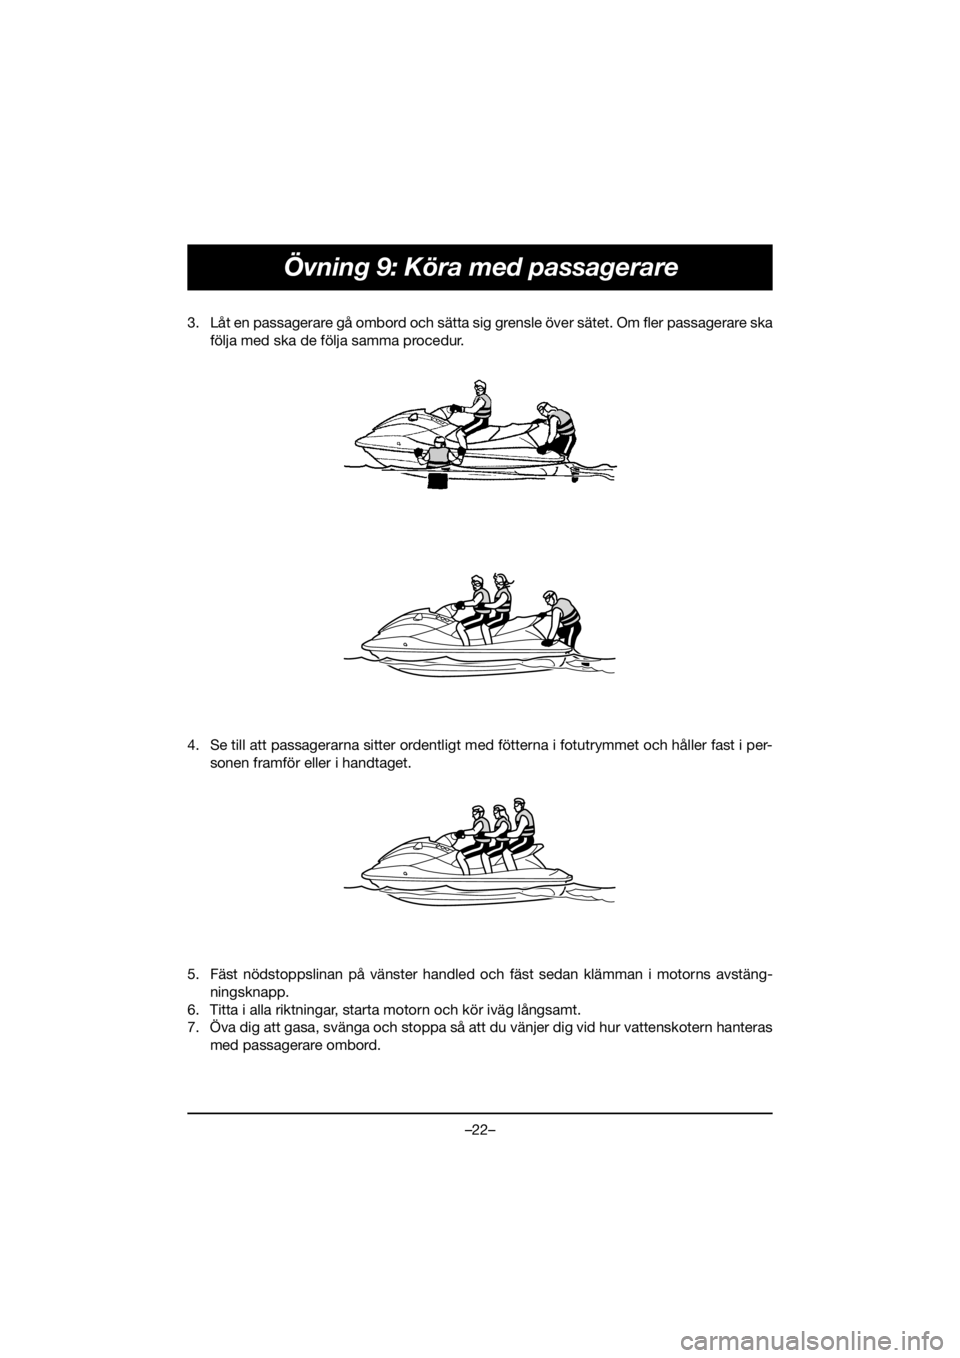 YAMAHA EXR 2020  Bruksanvisningar (in Swedish) –22–
Övning 9: Köra med passagerare
3. Låt en passagerare gå ombord och sätta sig grensle över sätet. Om fler passagerare ska
följa med ska de följa samma procedur. 
4. Se till att passag